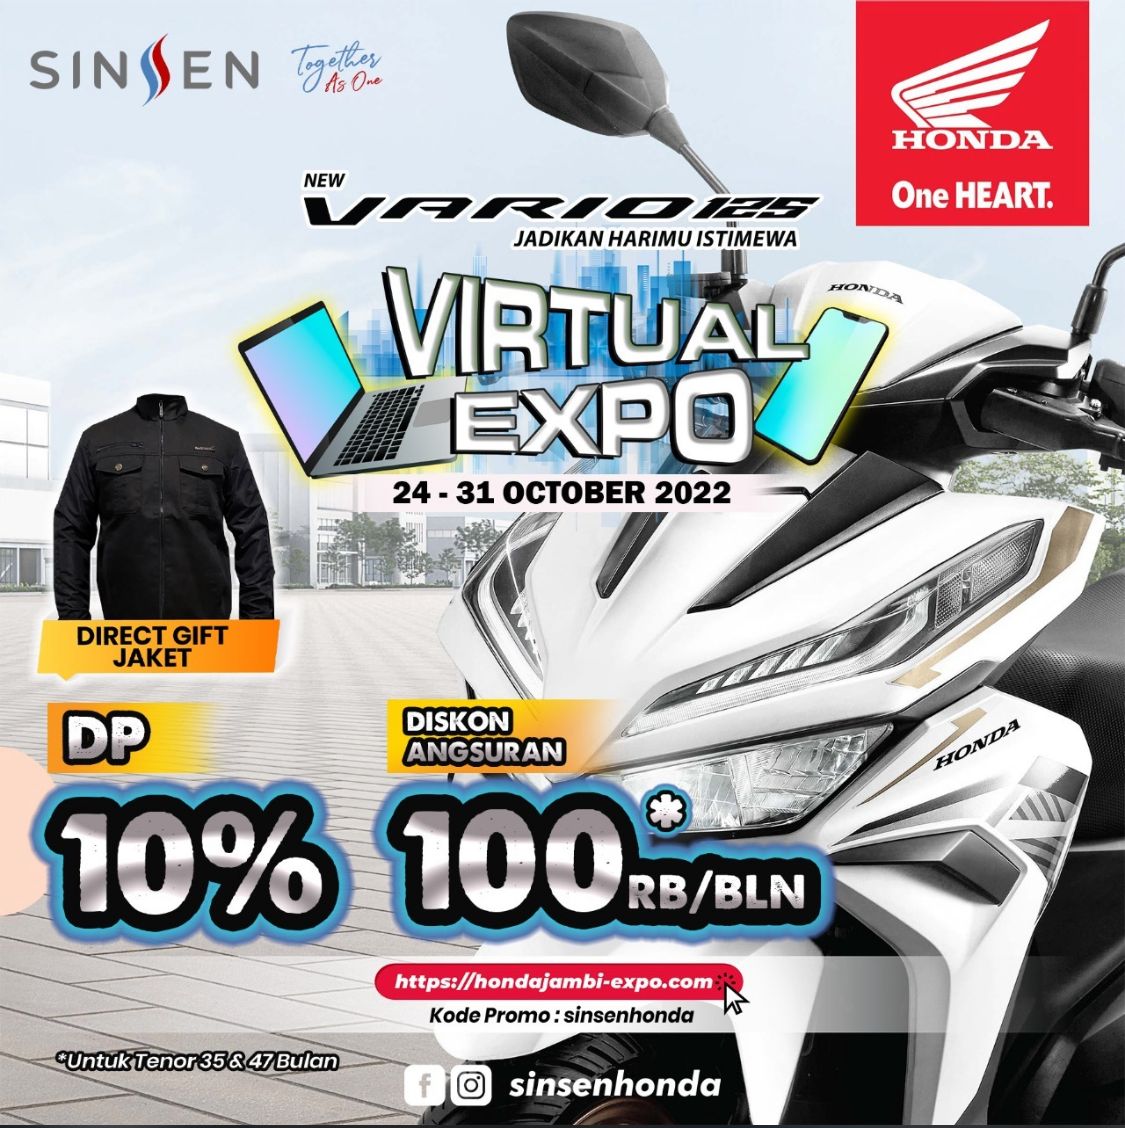 Virtual Expo New Honda Vario 125 Jadikan Harimu Istimewa